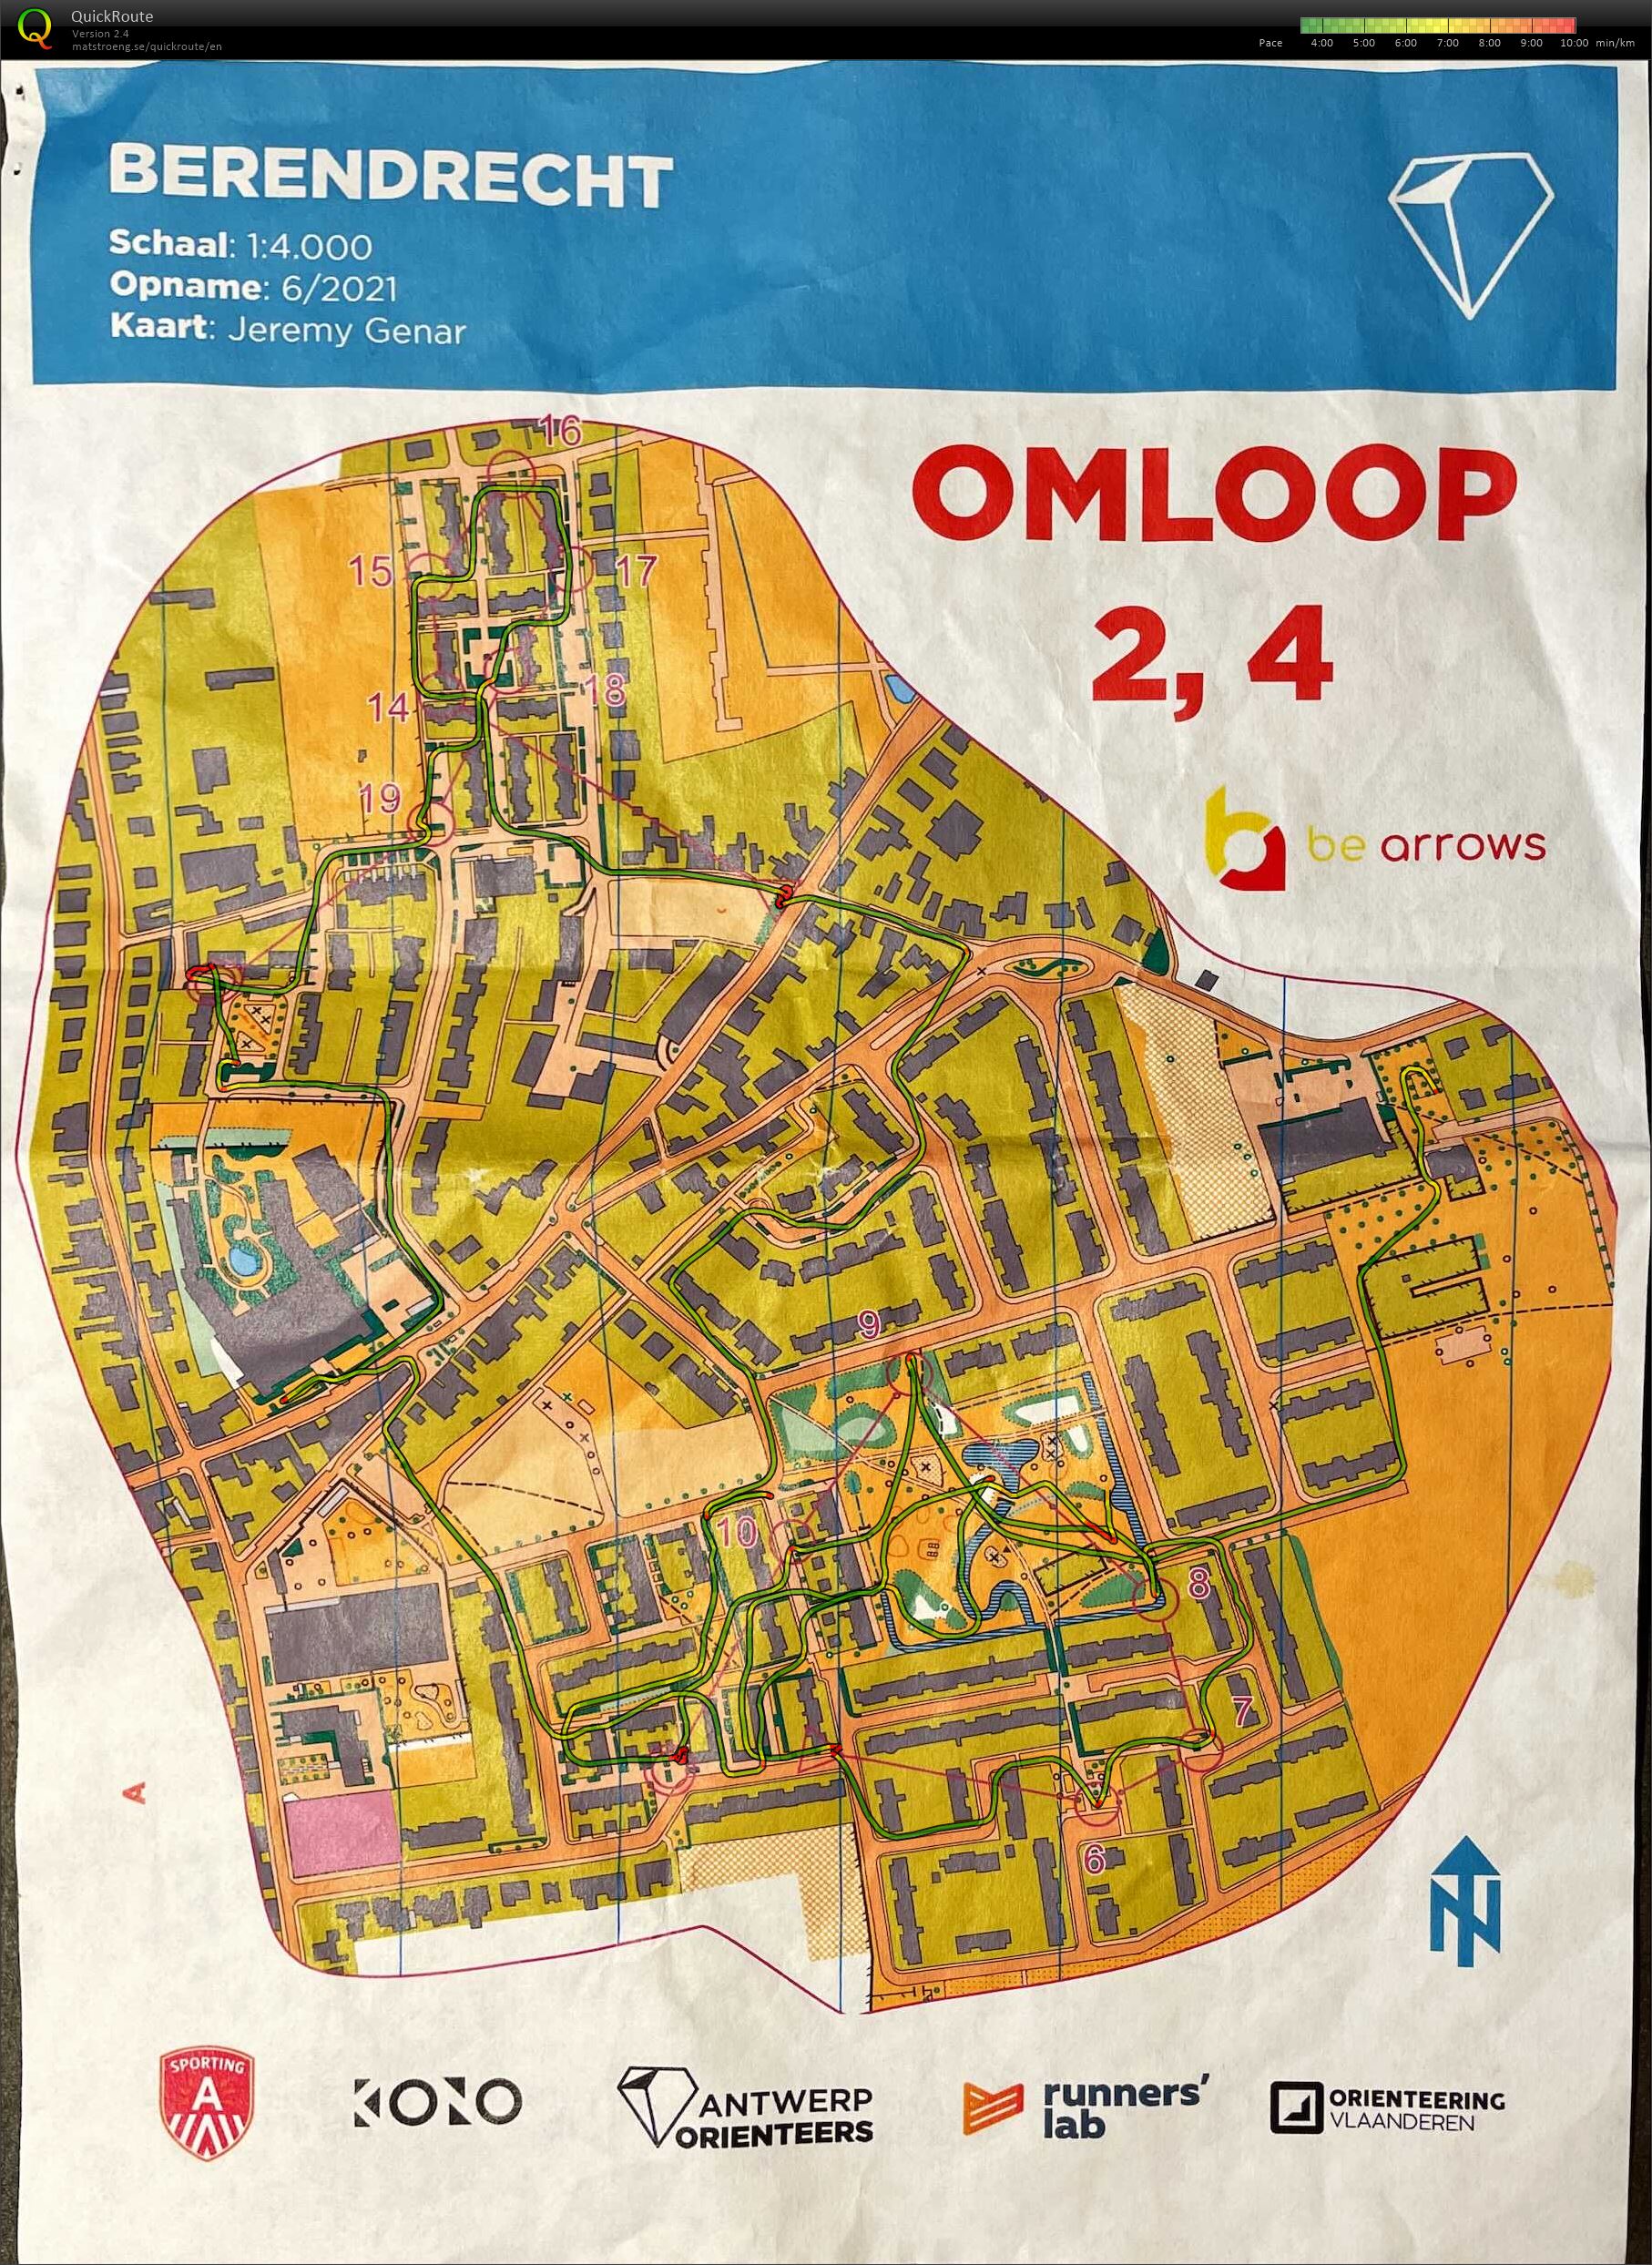 Berendrecht - Omloop 2,4 (11-06-2021)